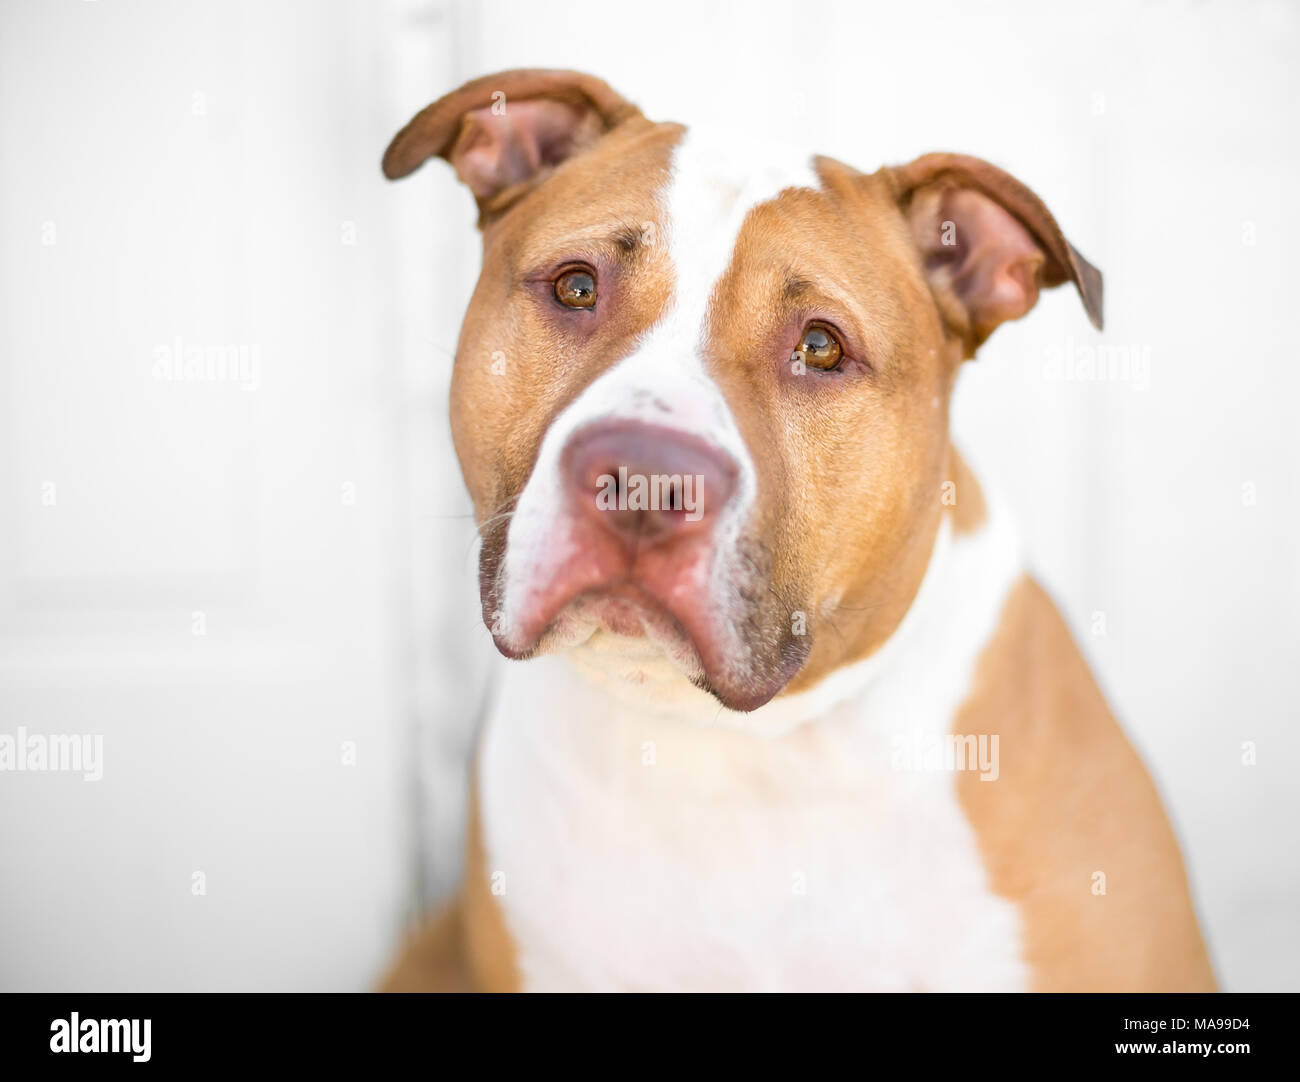 Rouge et blanc Un Pit Bull dog avec une expression triste Banque D'Images